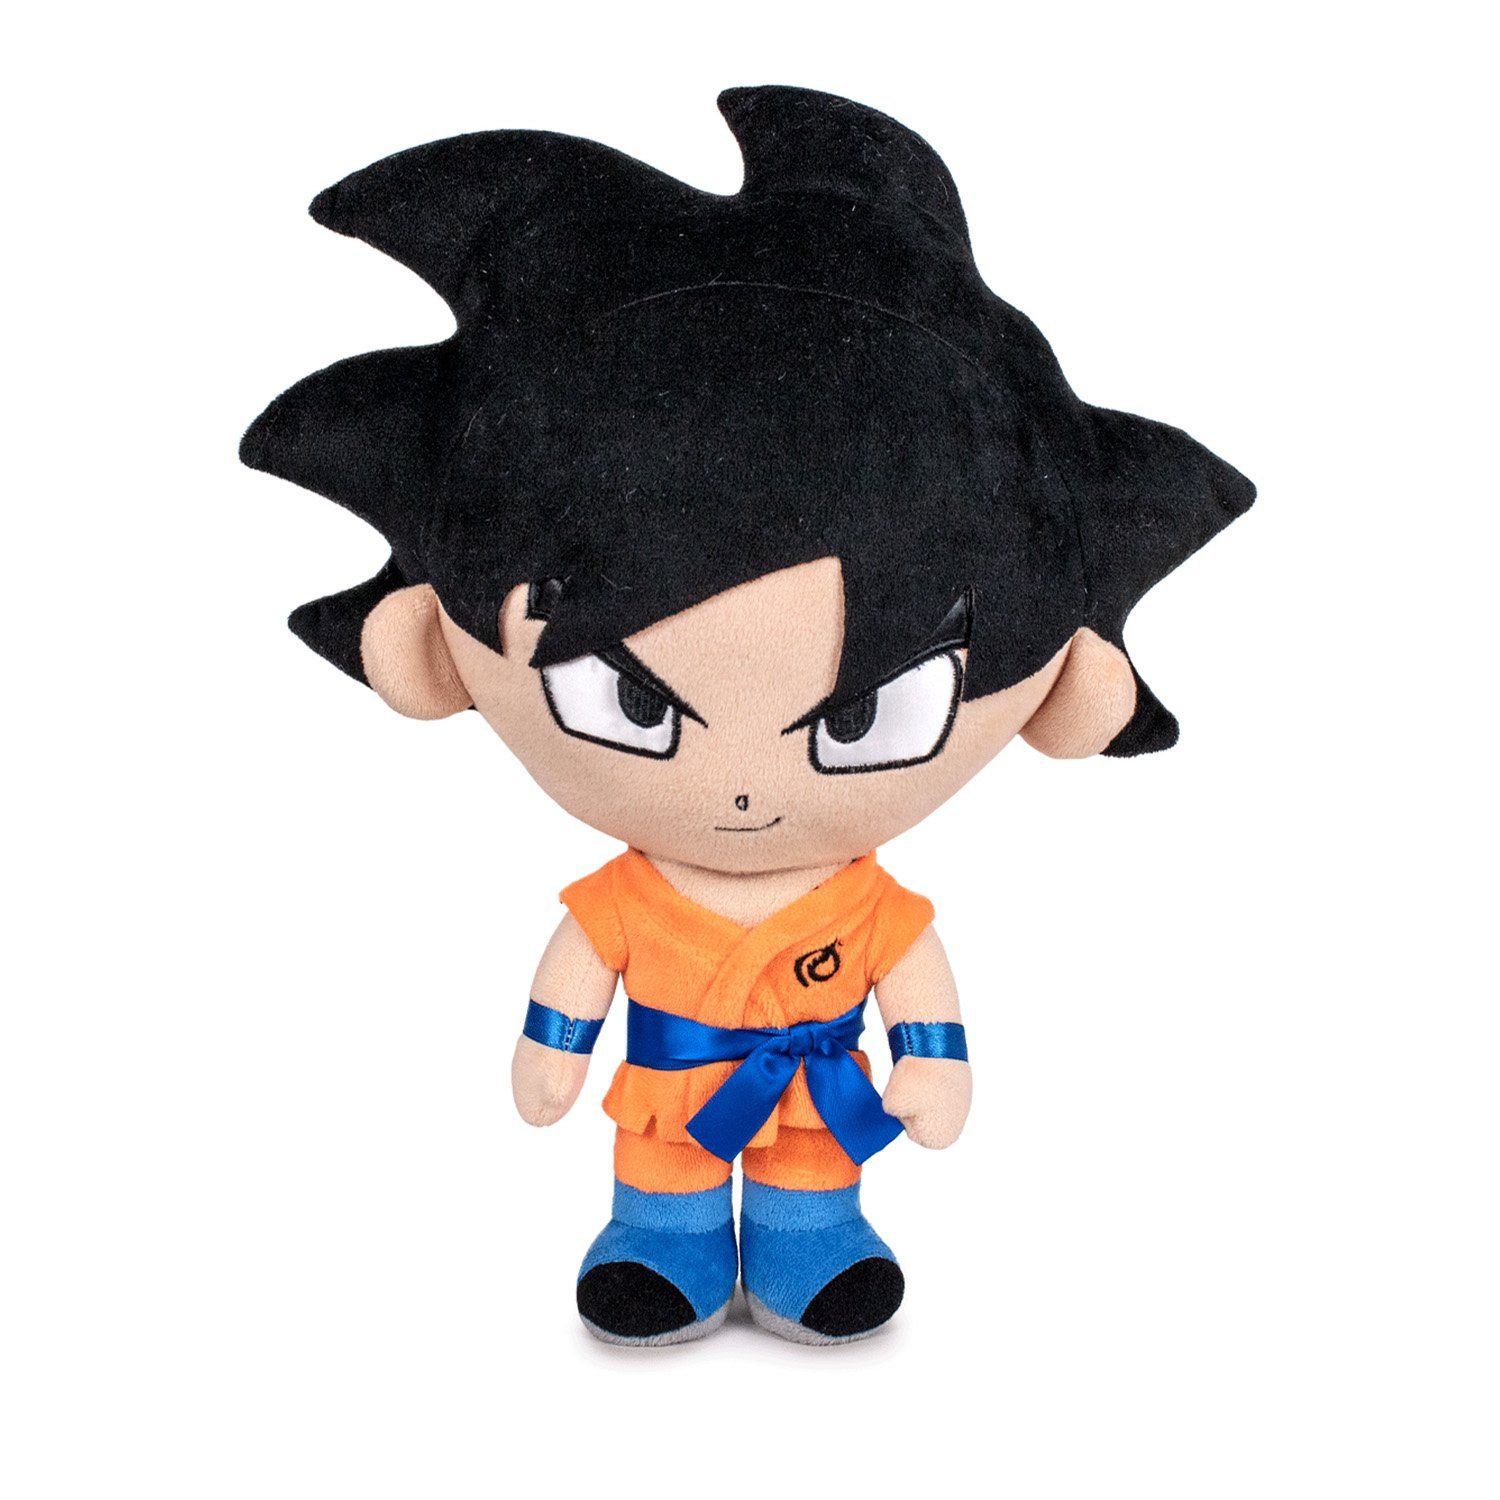 Play by Play Plüschfigur Dragonball Goku / Assorted Goku Kakarot / Vegeta / Beerus / Vegeta, ideal als Geschenk für Jungen und Mädchen